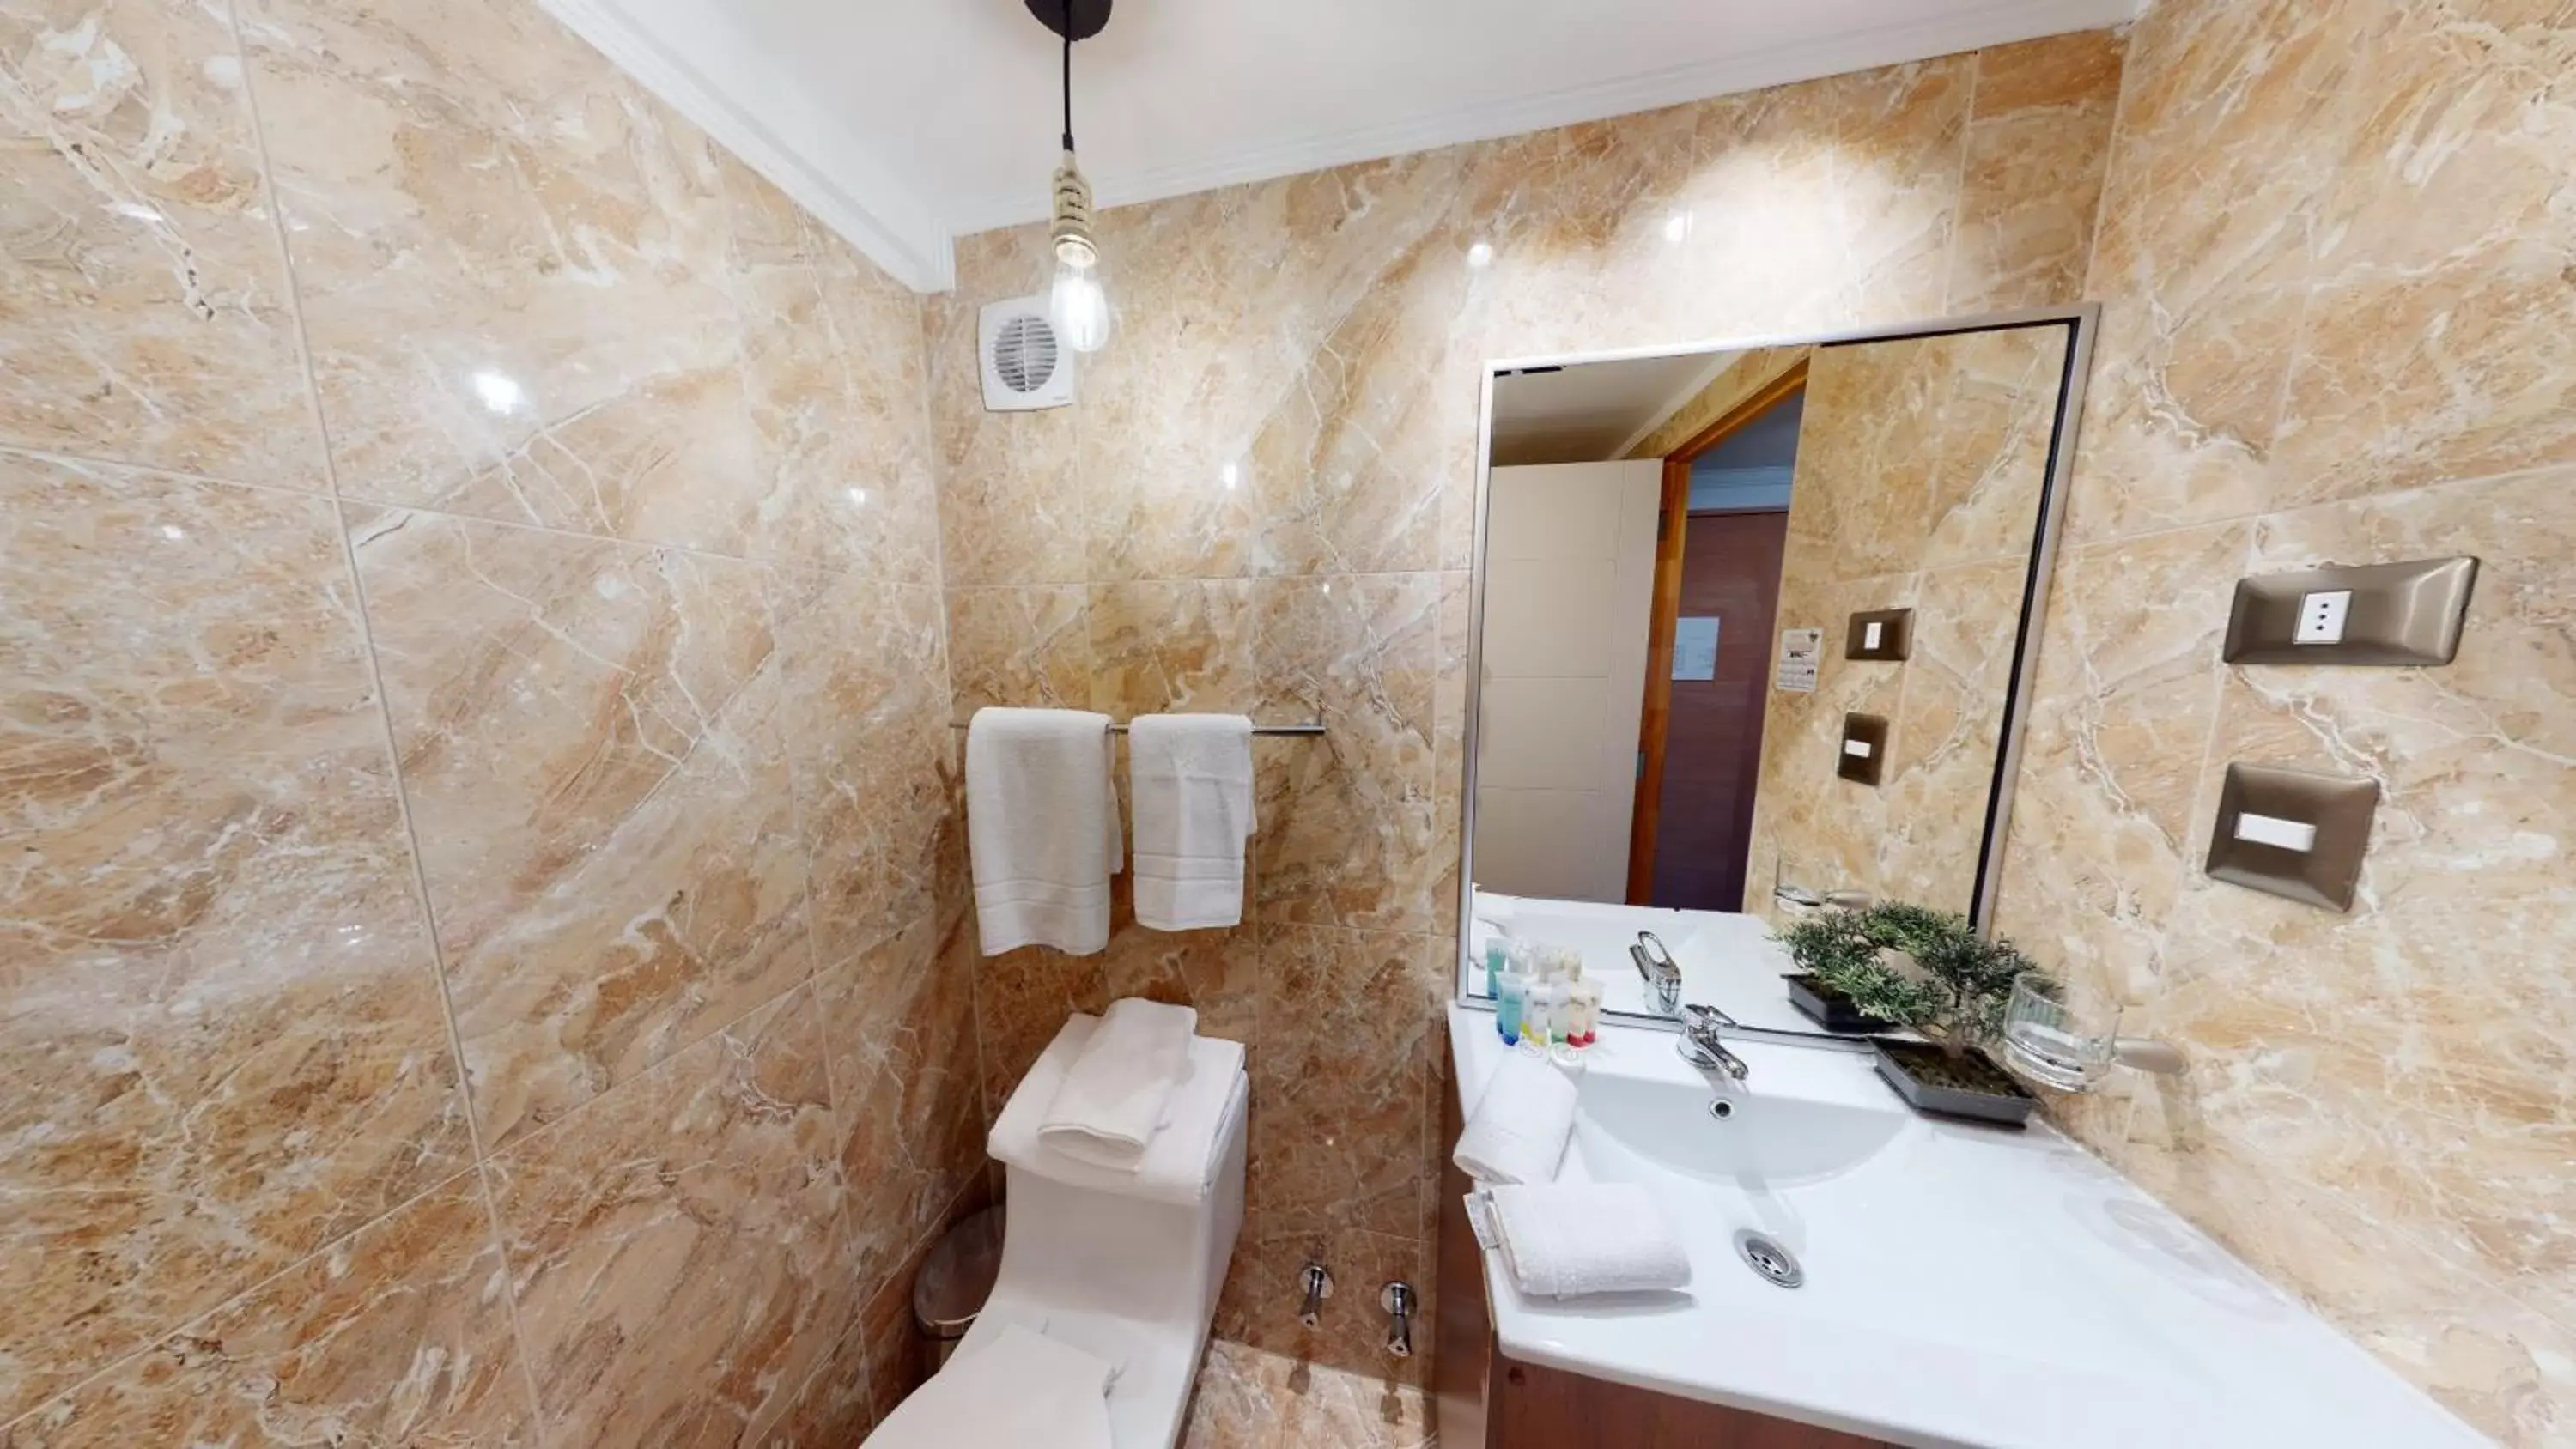 Toilet, Bathroom in Hotel Brasilia